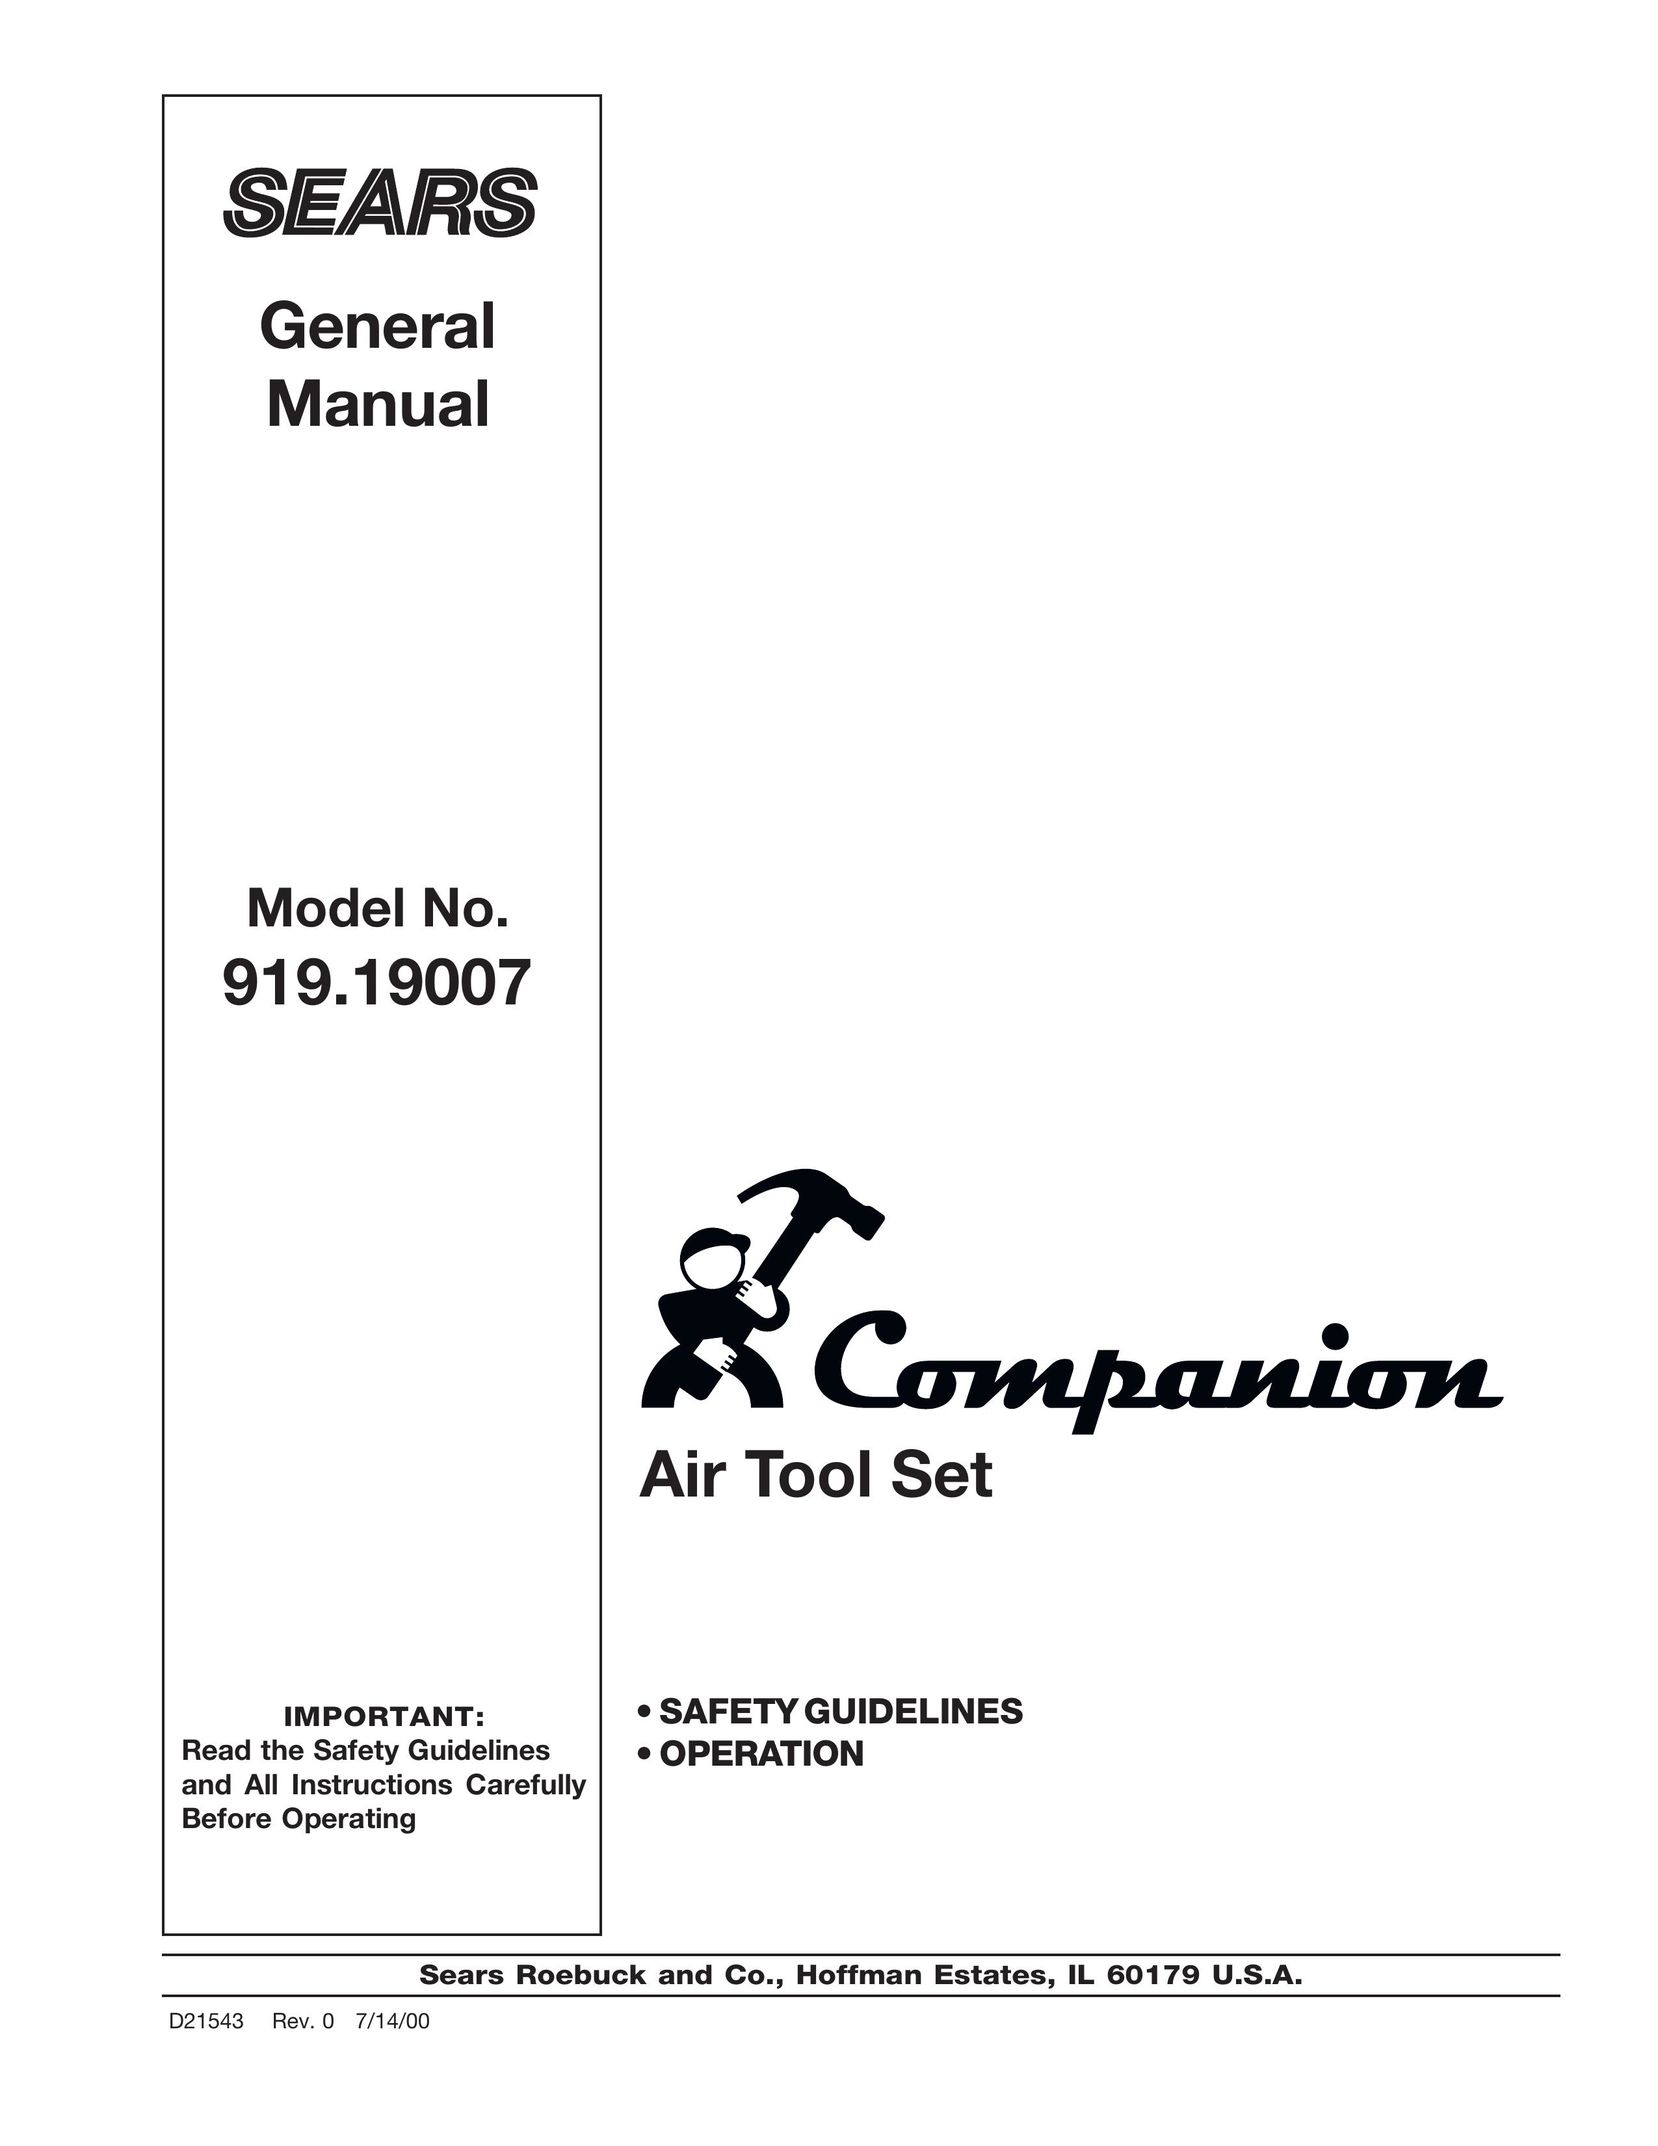 DeVillbiss Air Power Company D21543 Air Compressor User Manual